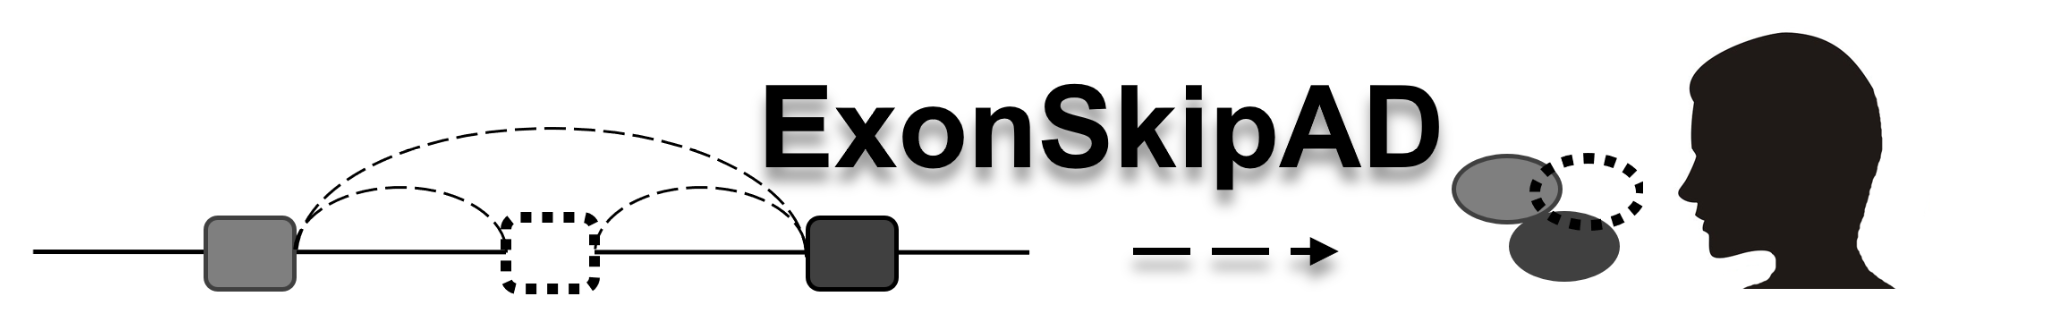 ExonSkipAD Logo